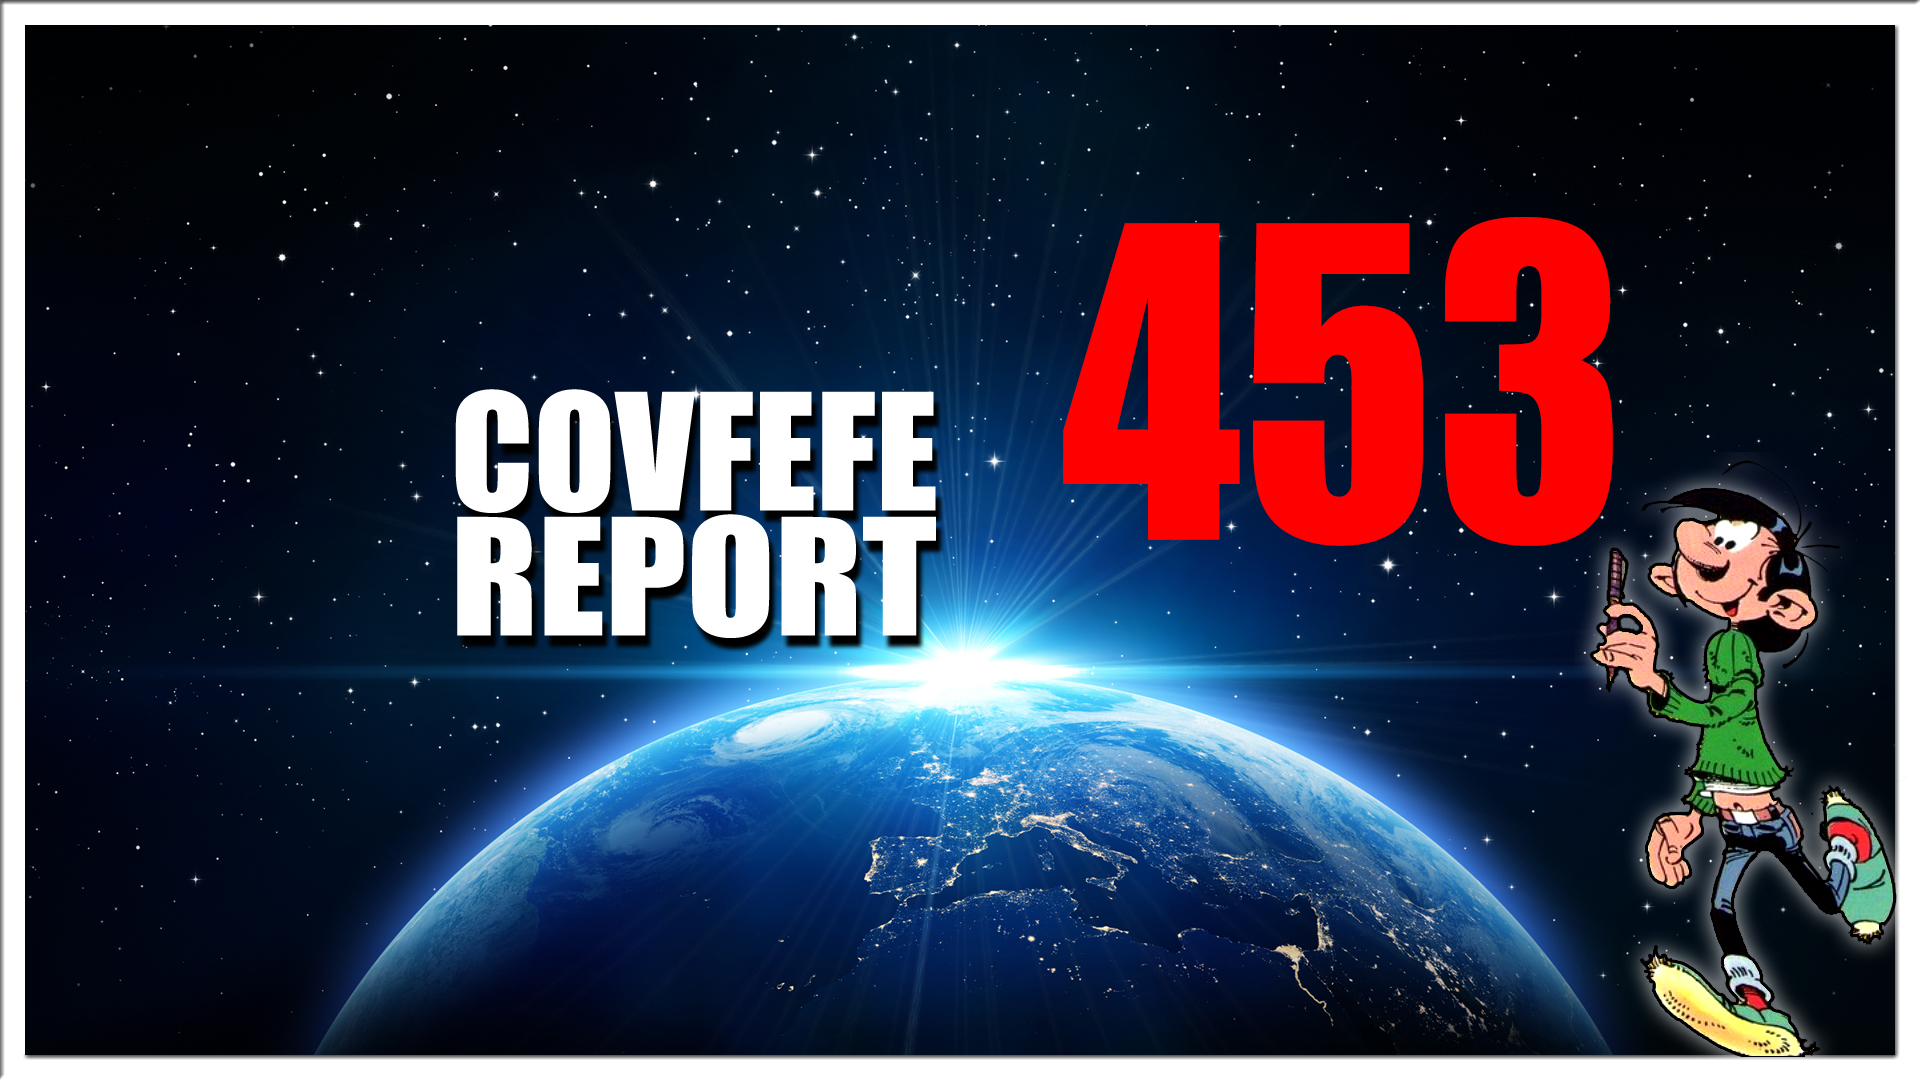 Covfefe Report 453. Wij waren allemaal gewaarschuwd